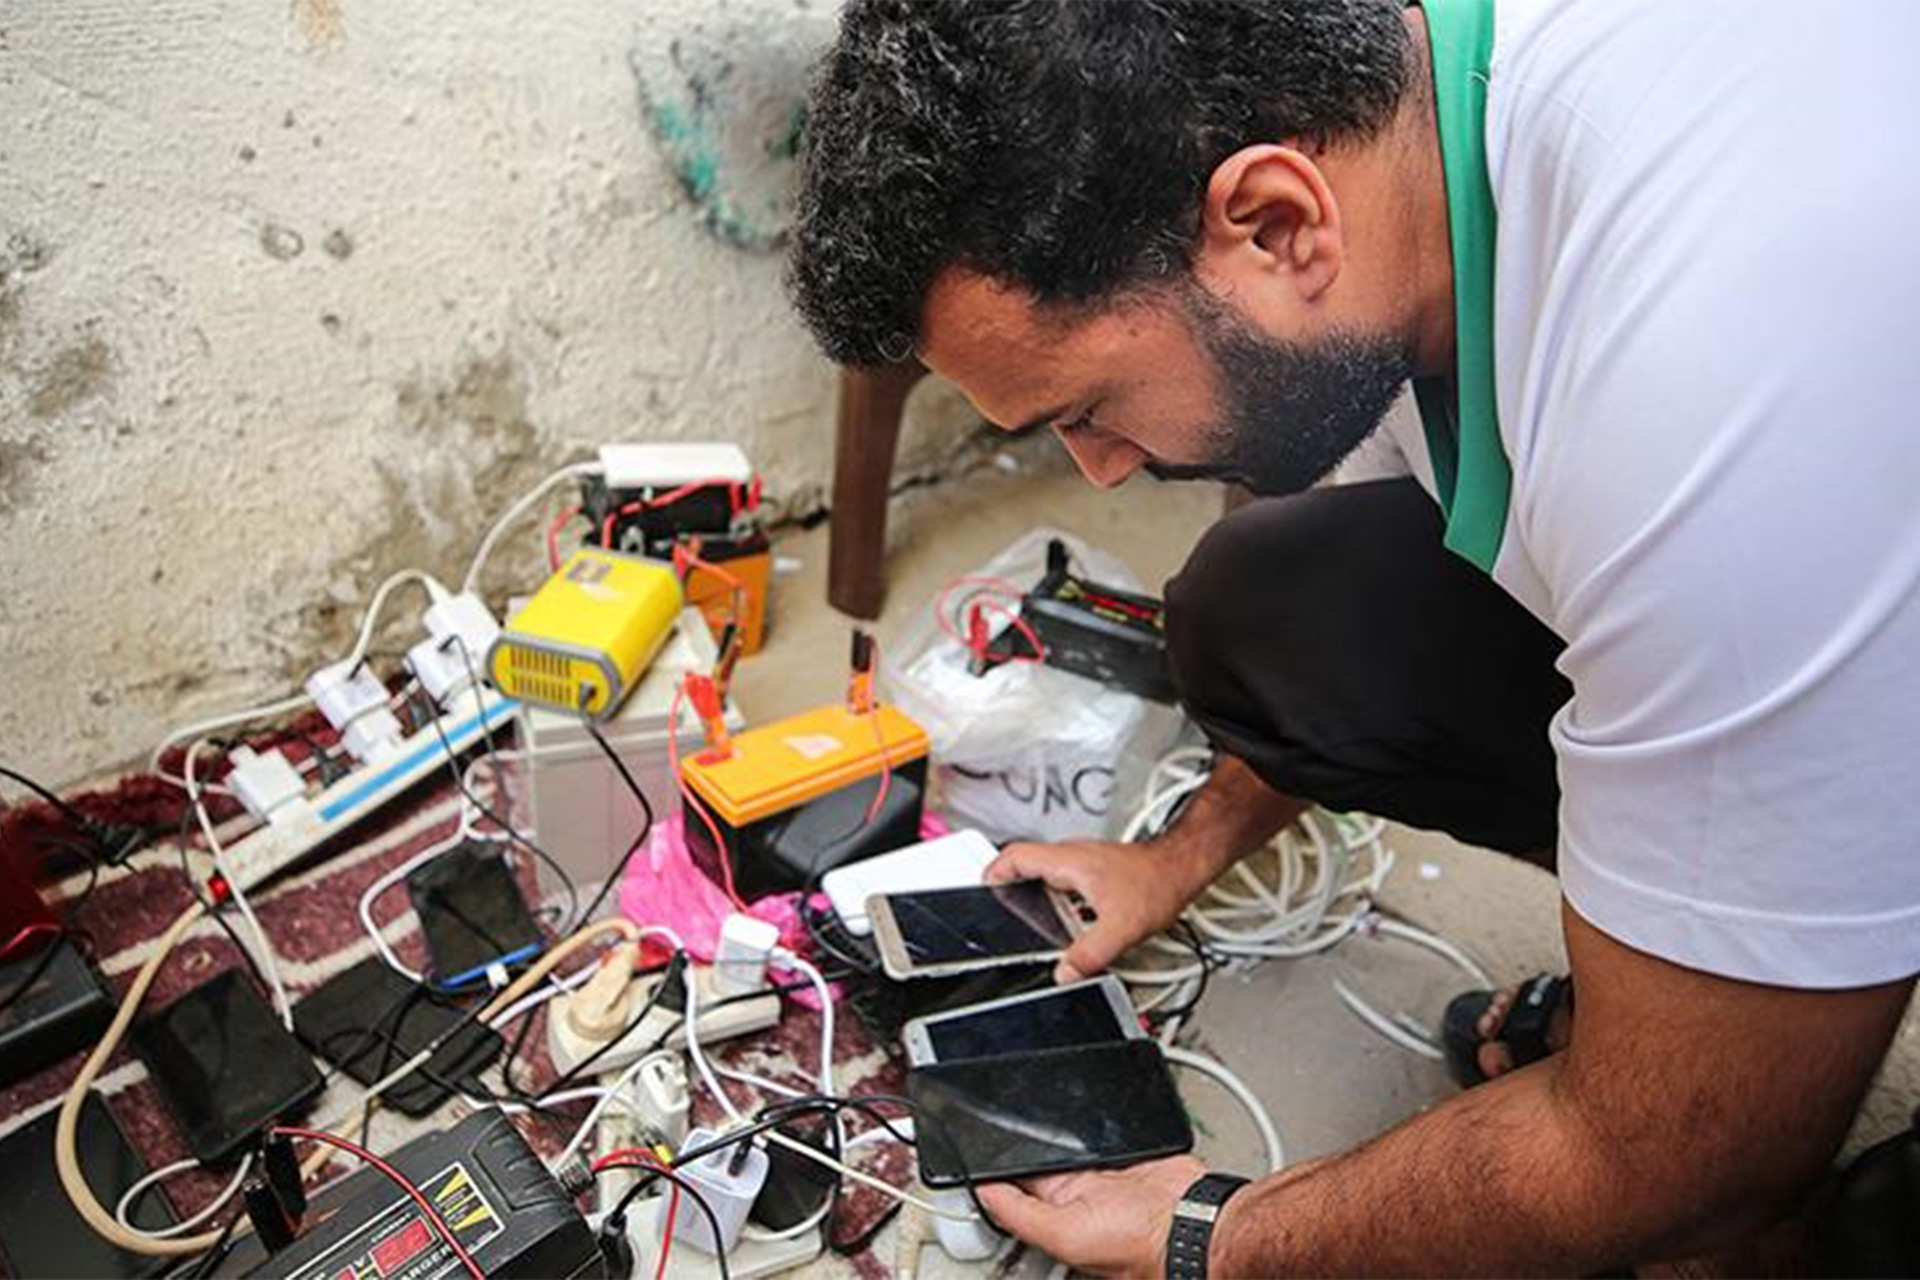 مع غياب تام للكهرباء.. شاب بغزة يقدم خدمة شحن الهواتف لـ150 عائلة | أسلوب حياة – البوكس نيوز